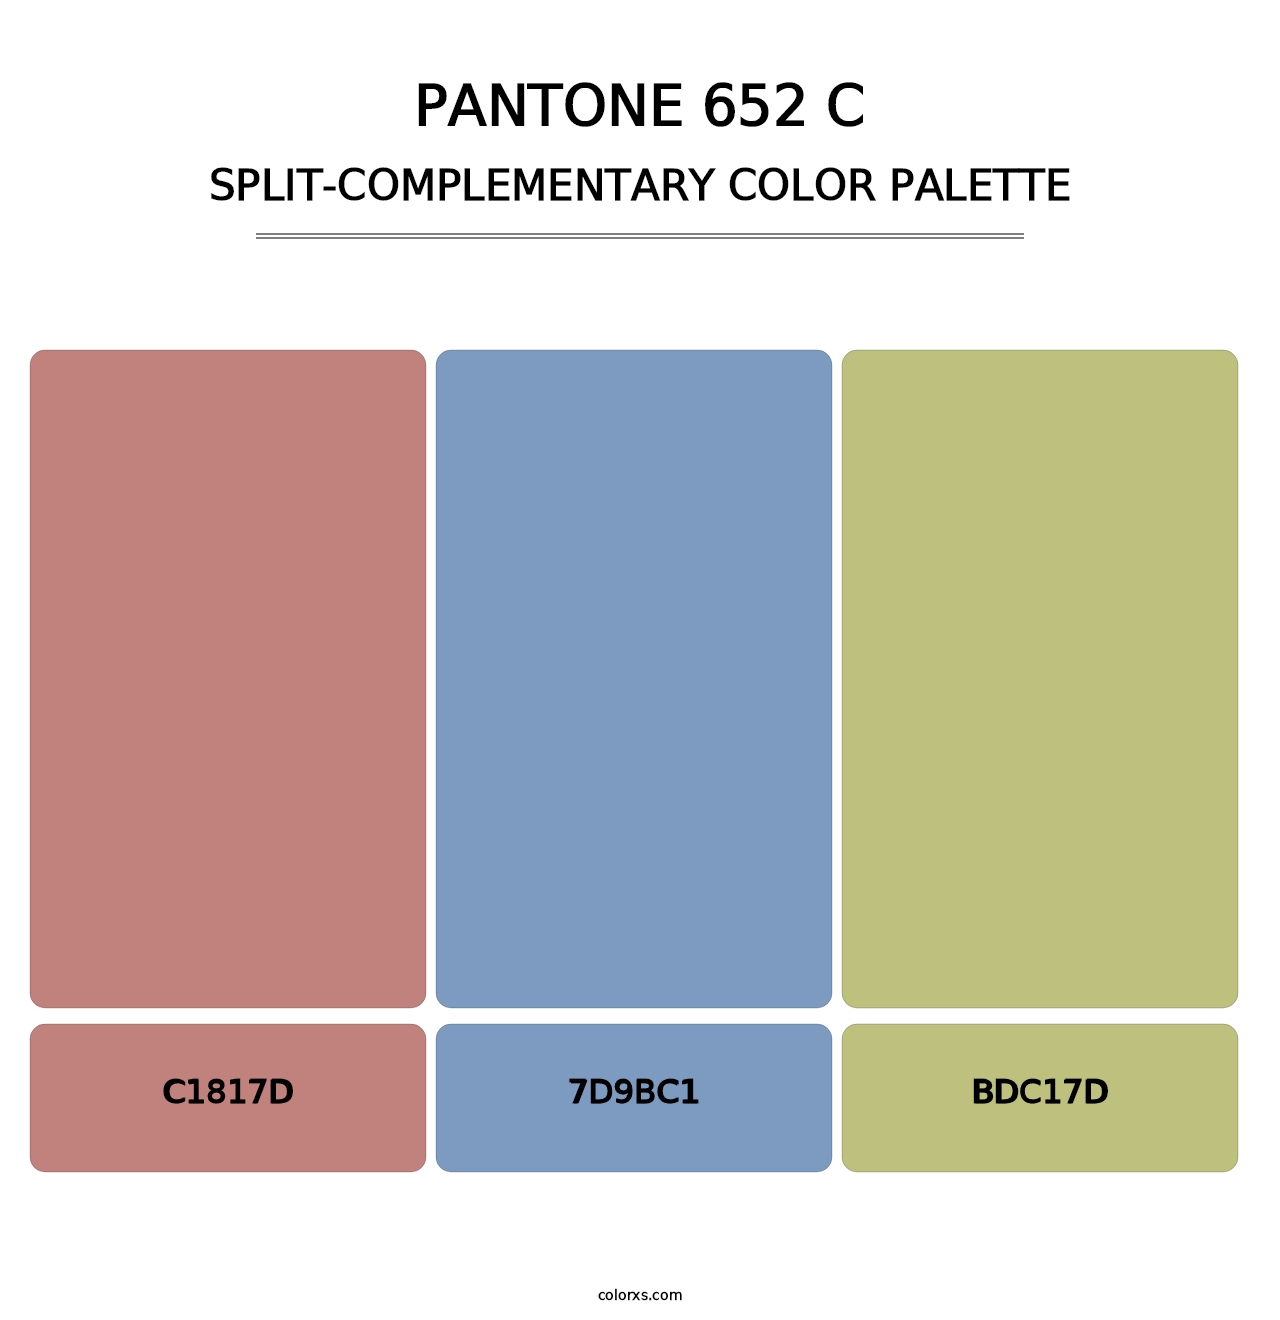 PANTONE 652 C - Split-Complementary Color Palette